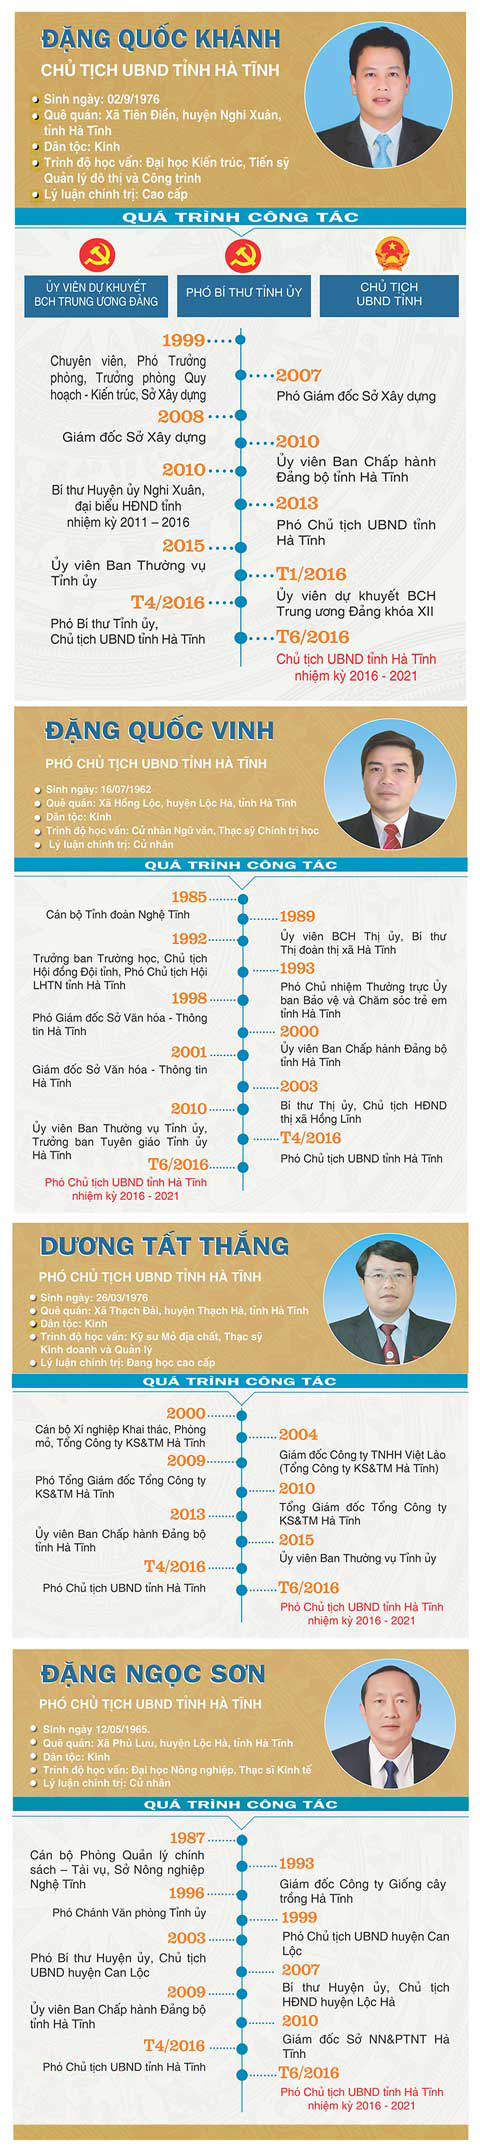 [Infographic] Chân dung Chủ tịch, các Phó Chủ tịch UBND tỉnh Hà Tĩnh